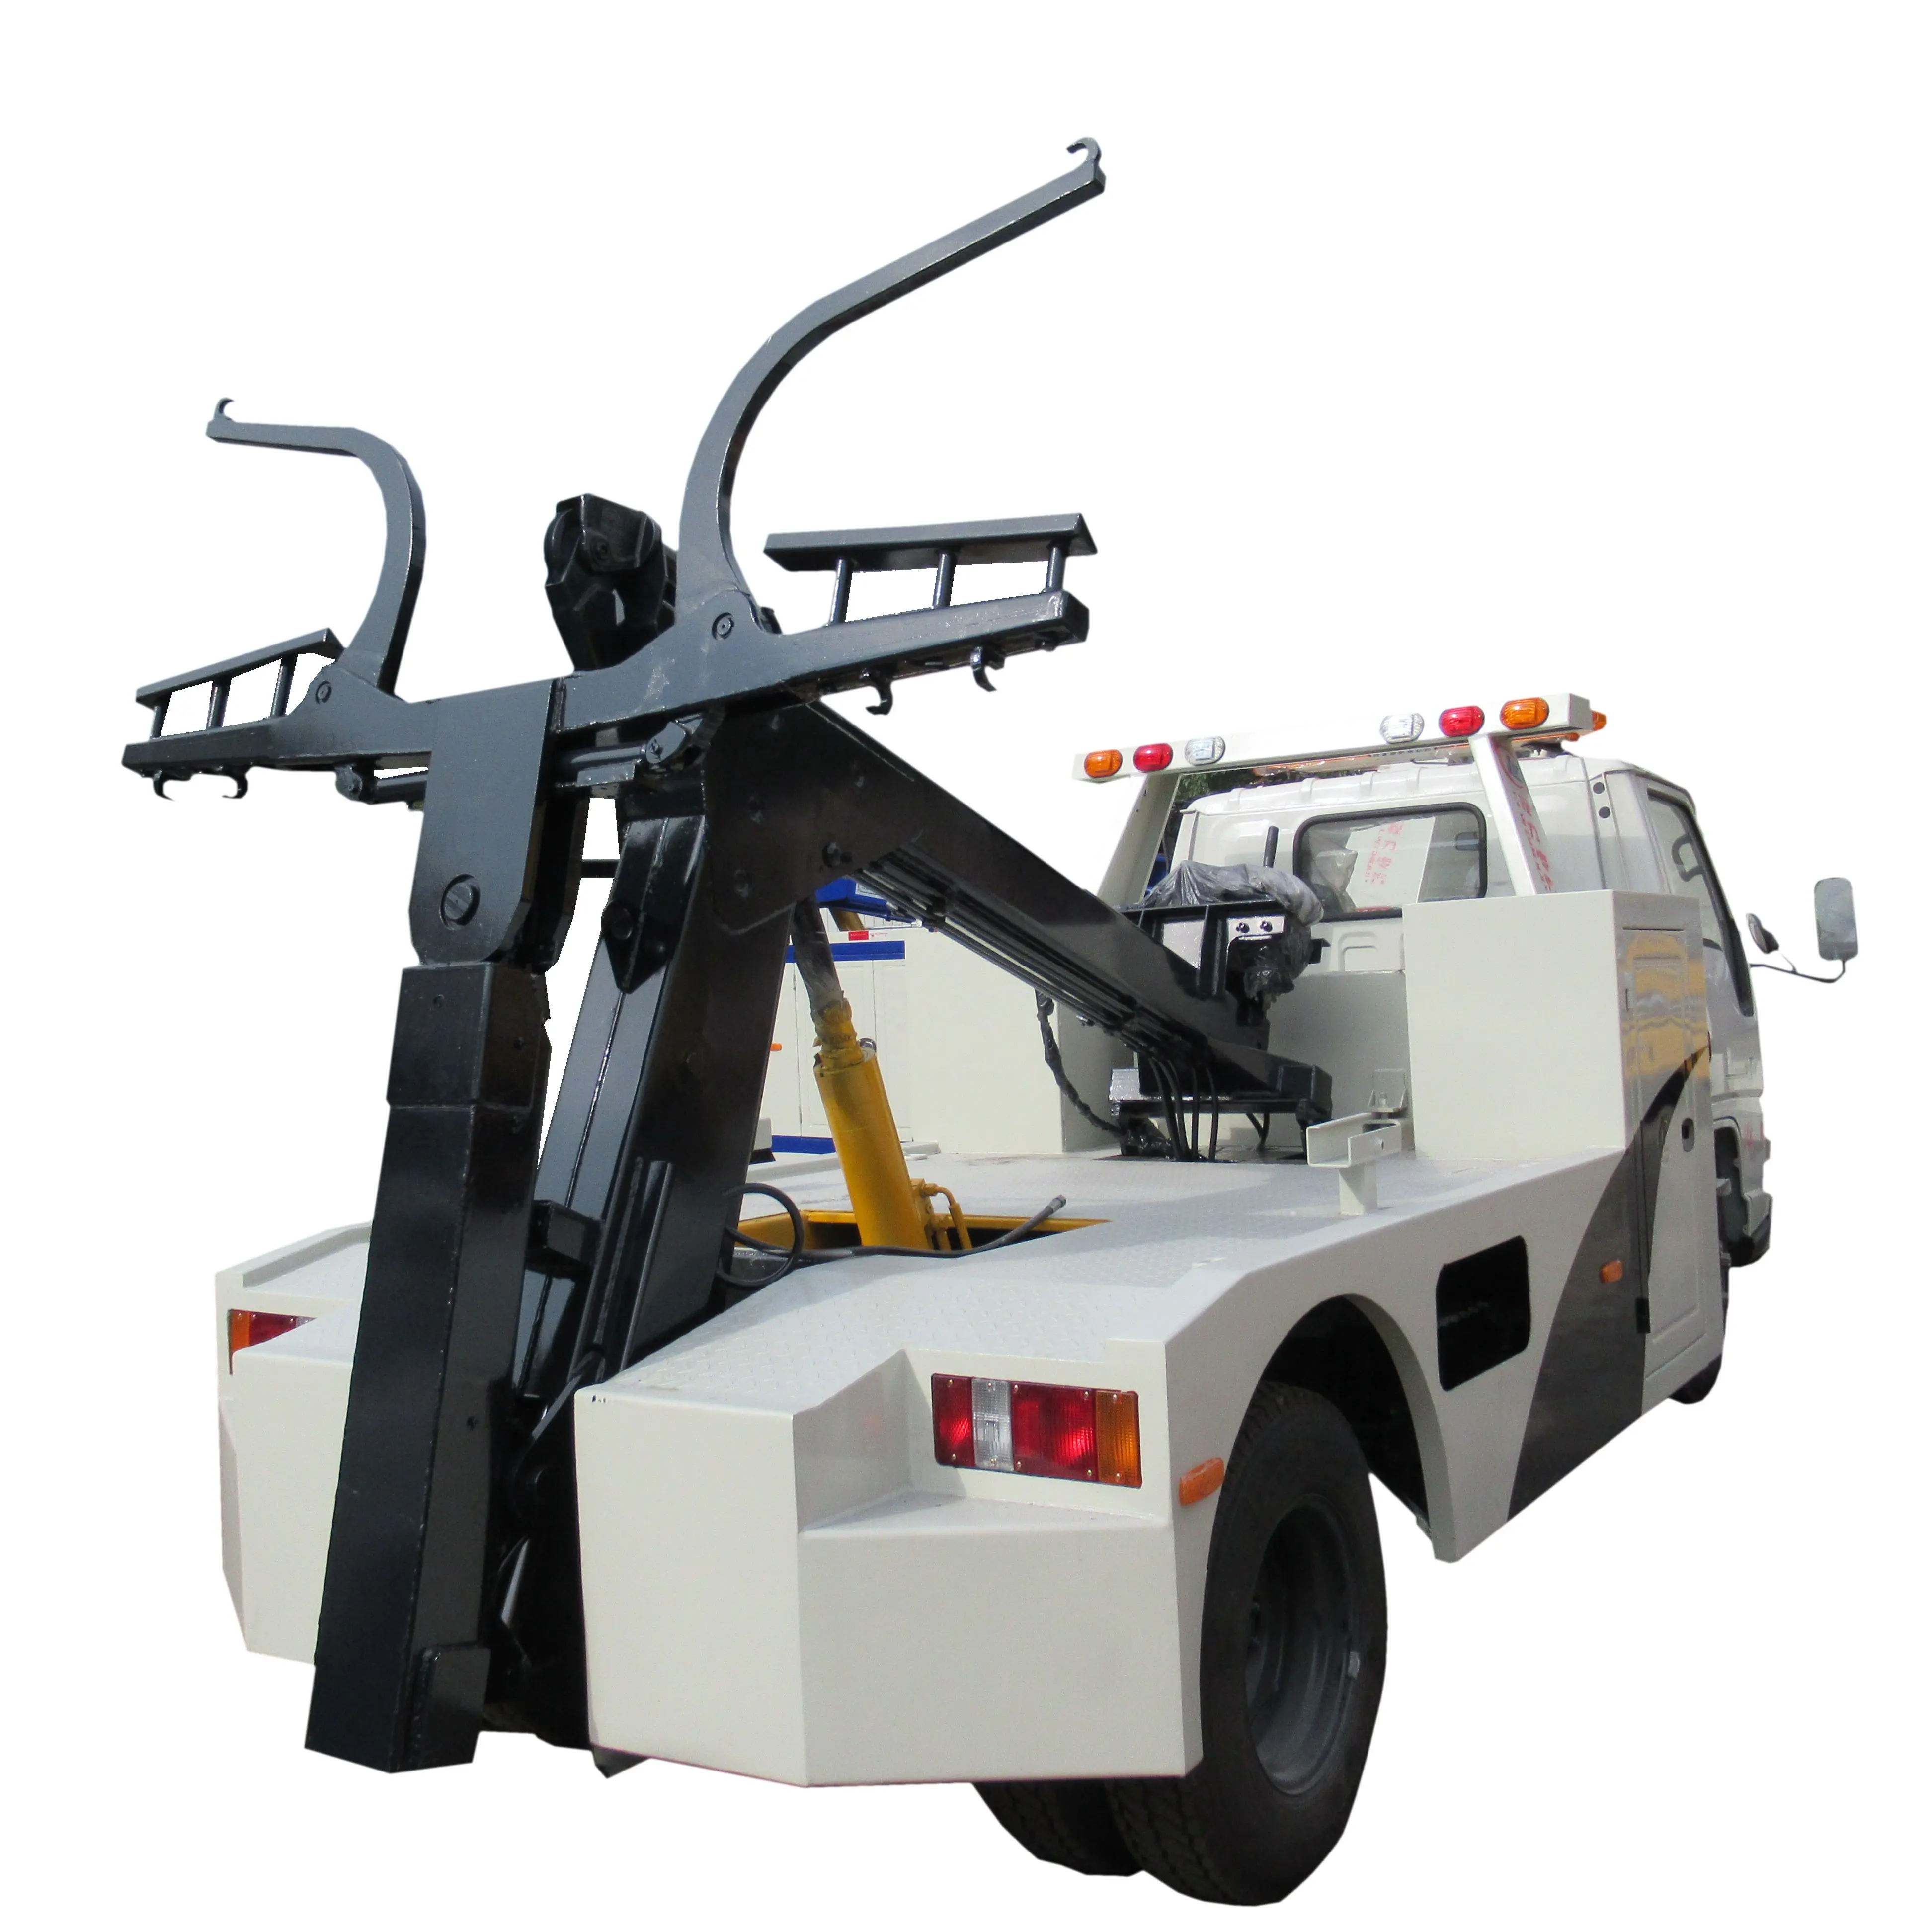 Offre Spéciale JMC 57kw nouveau 2 tonnes treuil manuel ventilation équipement de véhicule hydraulique dépanneuse dépanneuse corps